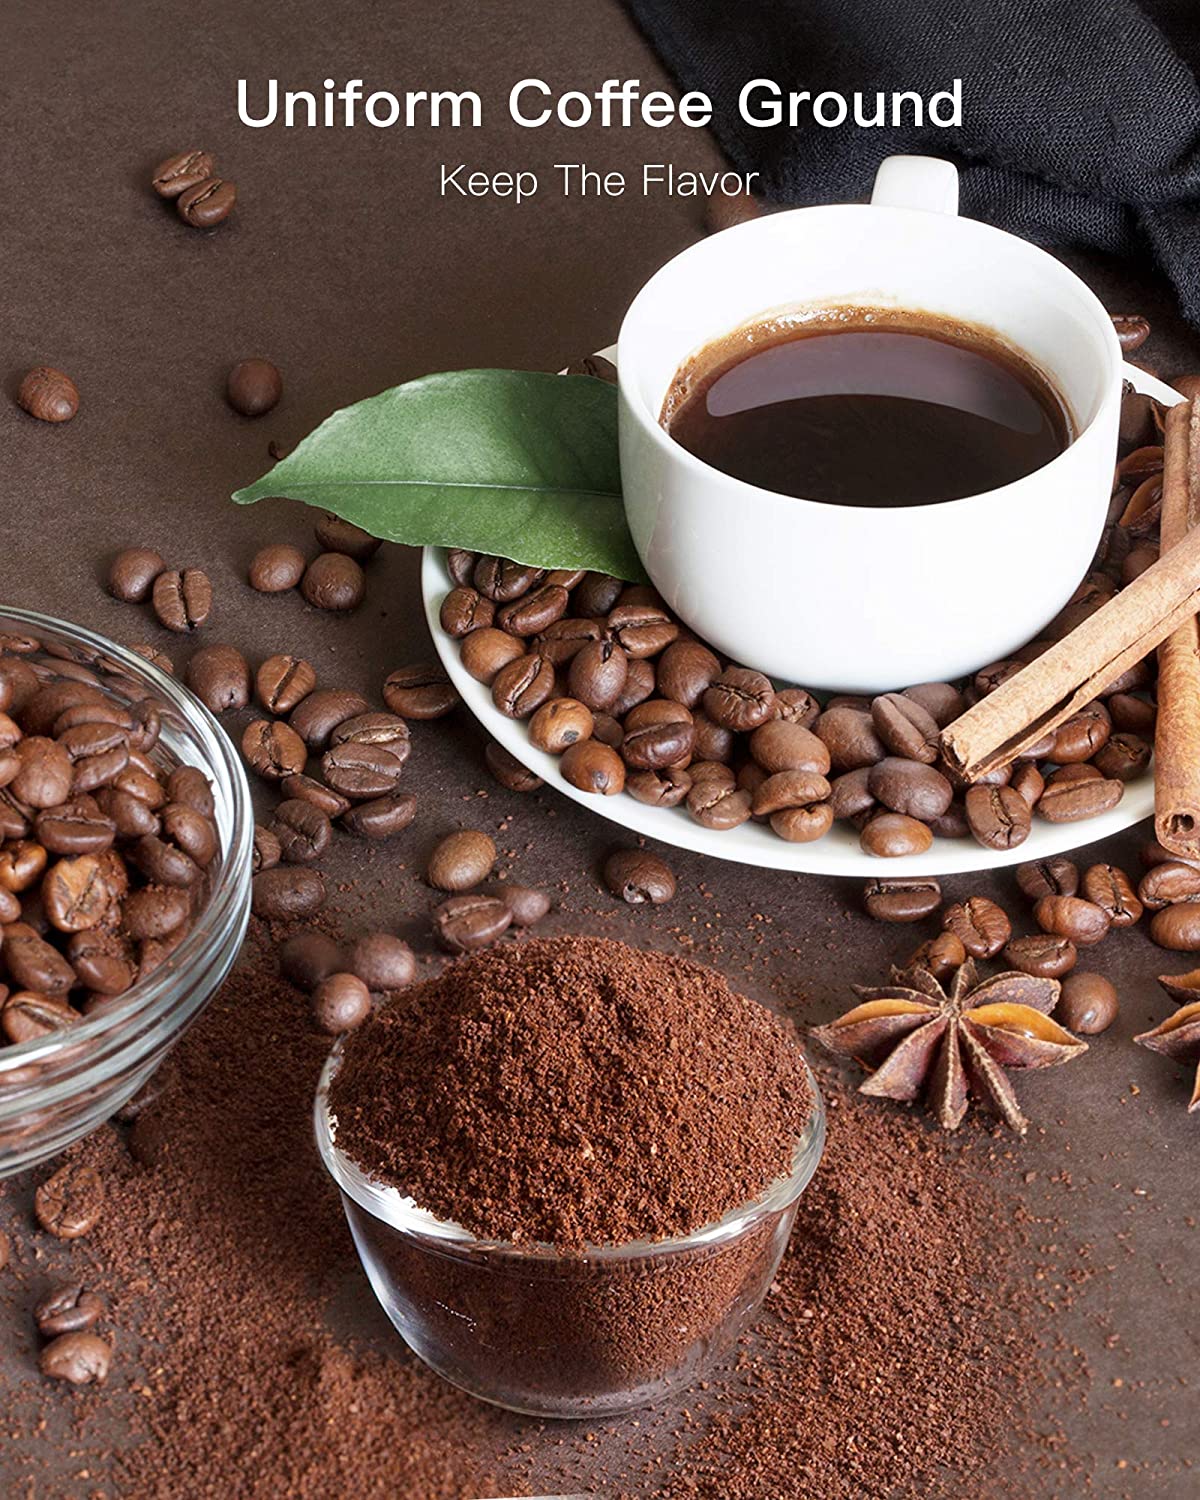 SHARDOR Adjustable Coffee Grinder Electric, Herb Grinder, Spice Grinde –  Kaffa Abode